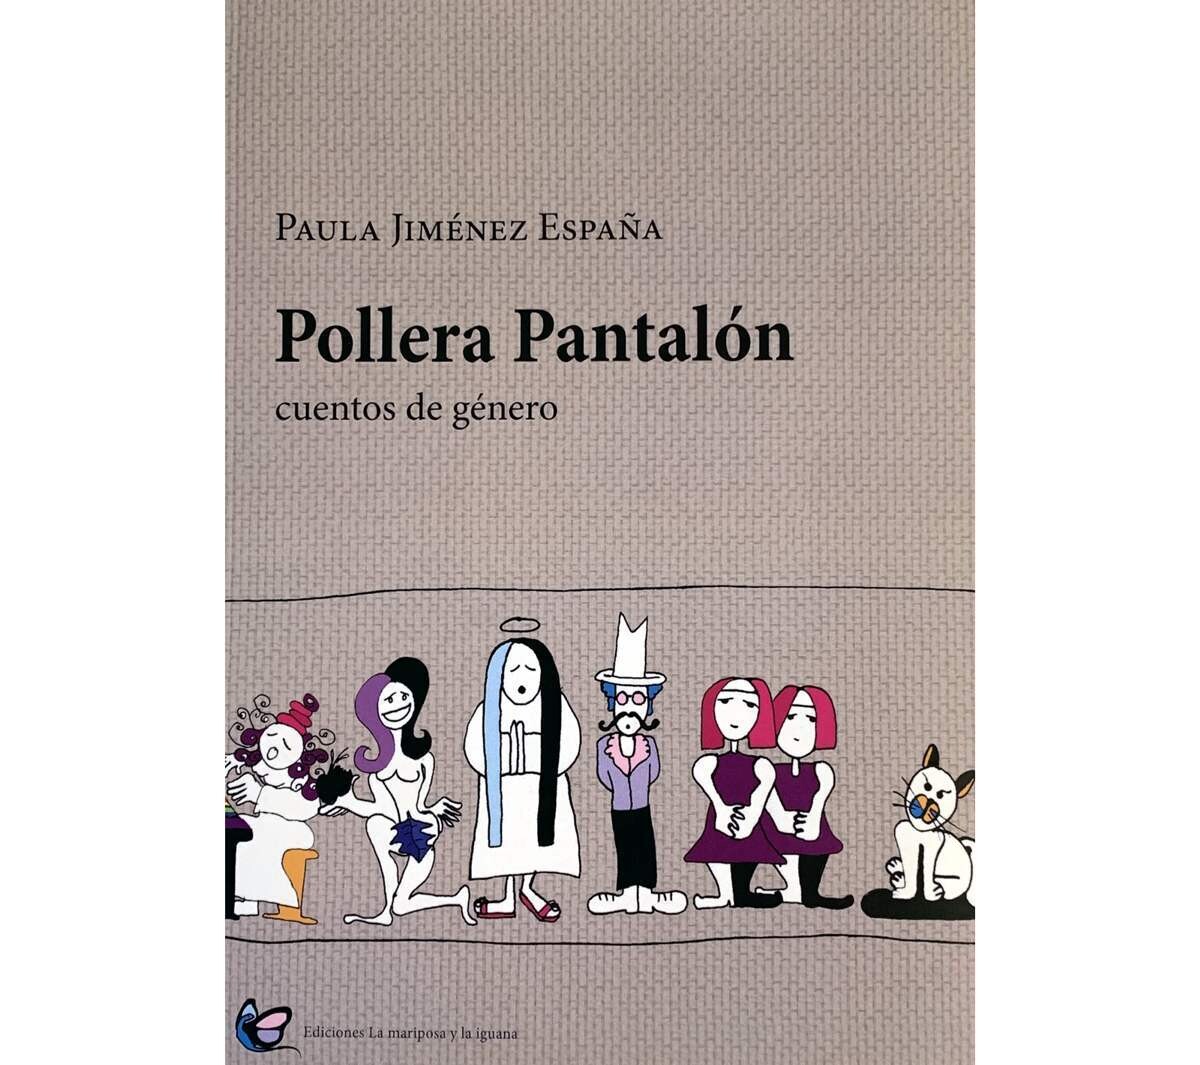 Pollera Pantalón: Cuentos de género by Paula Jimenez España